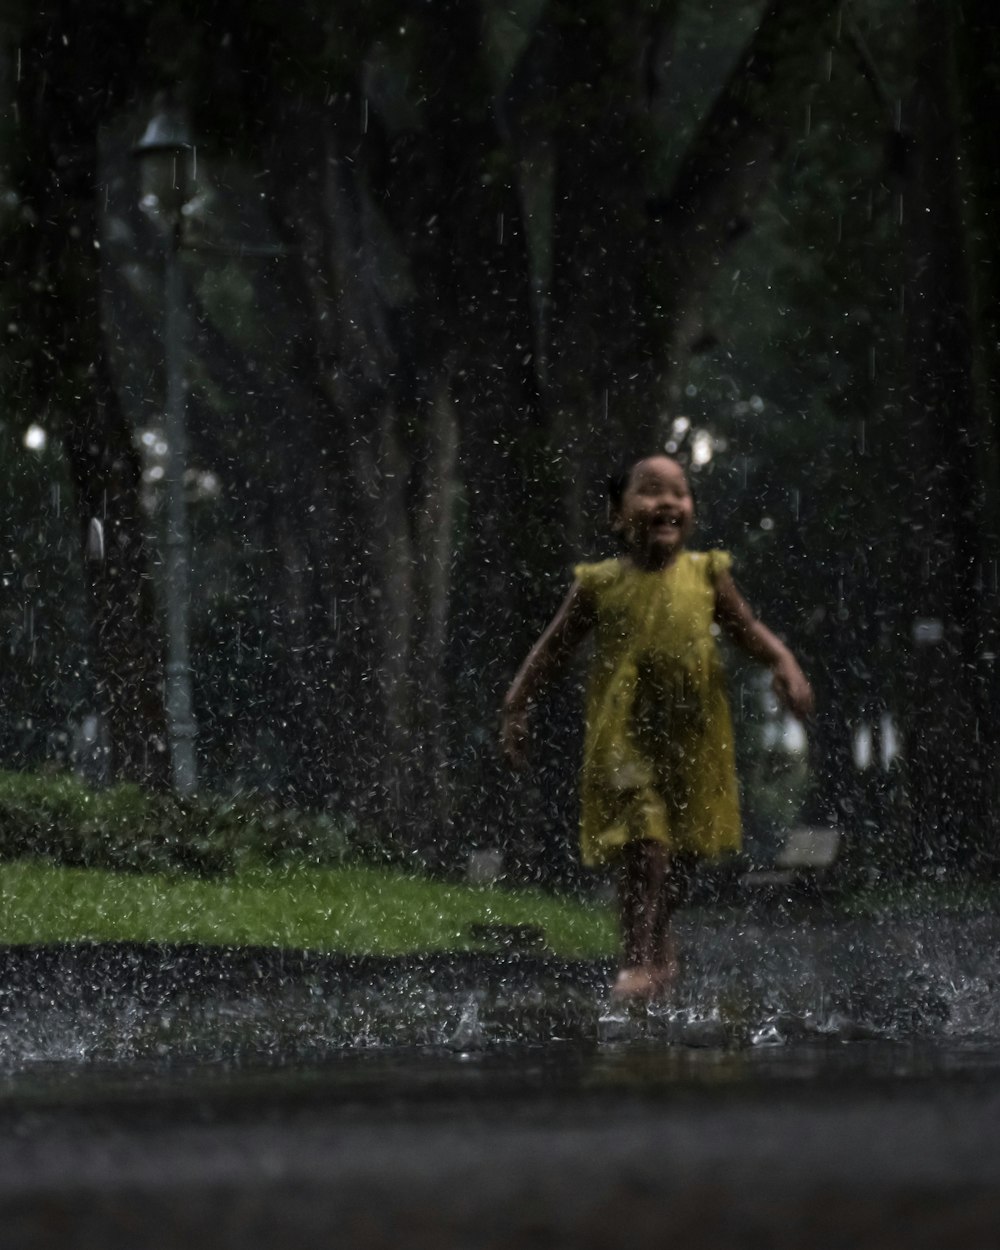 Mädchen im gelben Kleid spielt im Regen